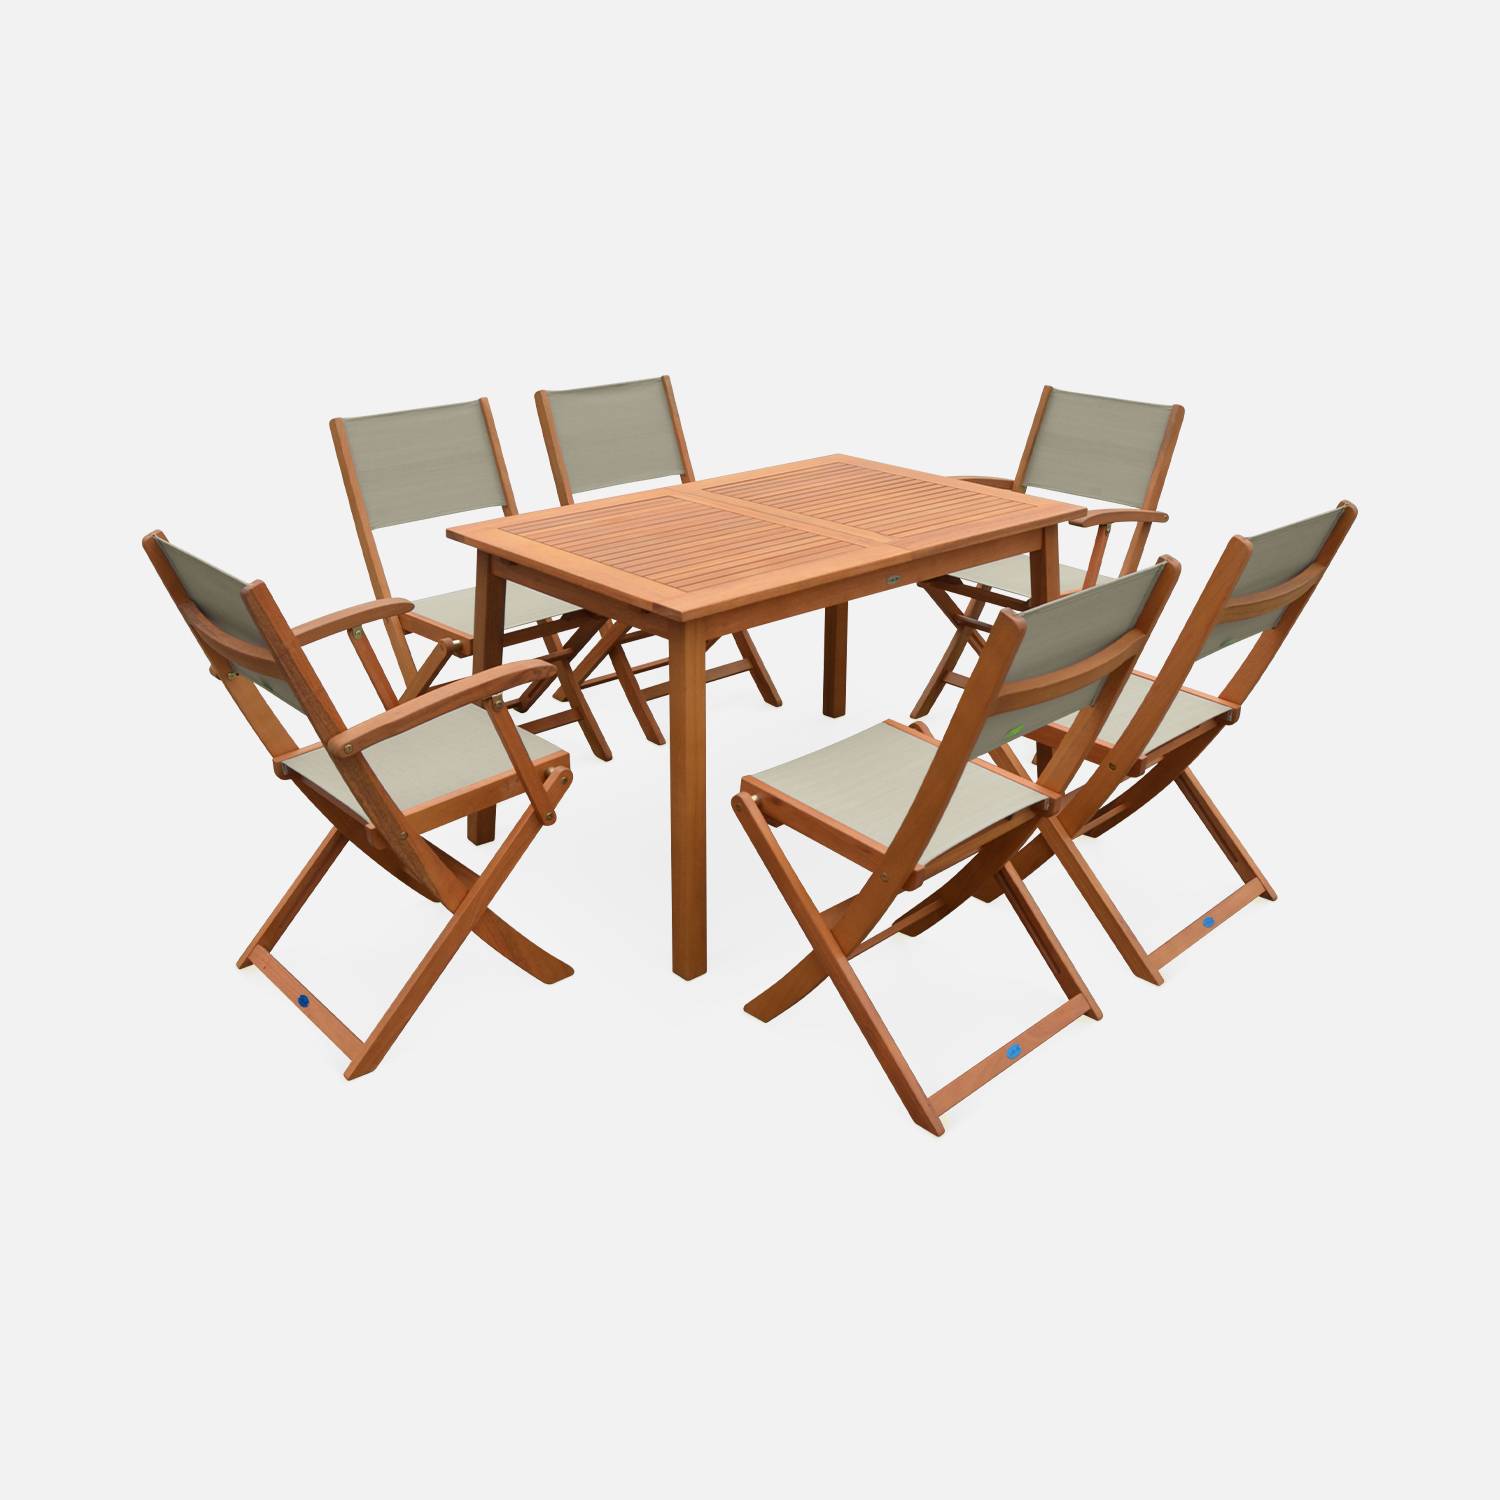 Ausziehbare Gartenmöbel aus Holz - Almeria - Tisch 120/180 cm mit Verlängerung, 2 Sesseln und 4 Stühlen aus geöltem FSC-Eukalyptusholz und taupegrauem Textilene Photo4